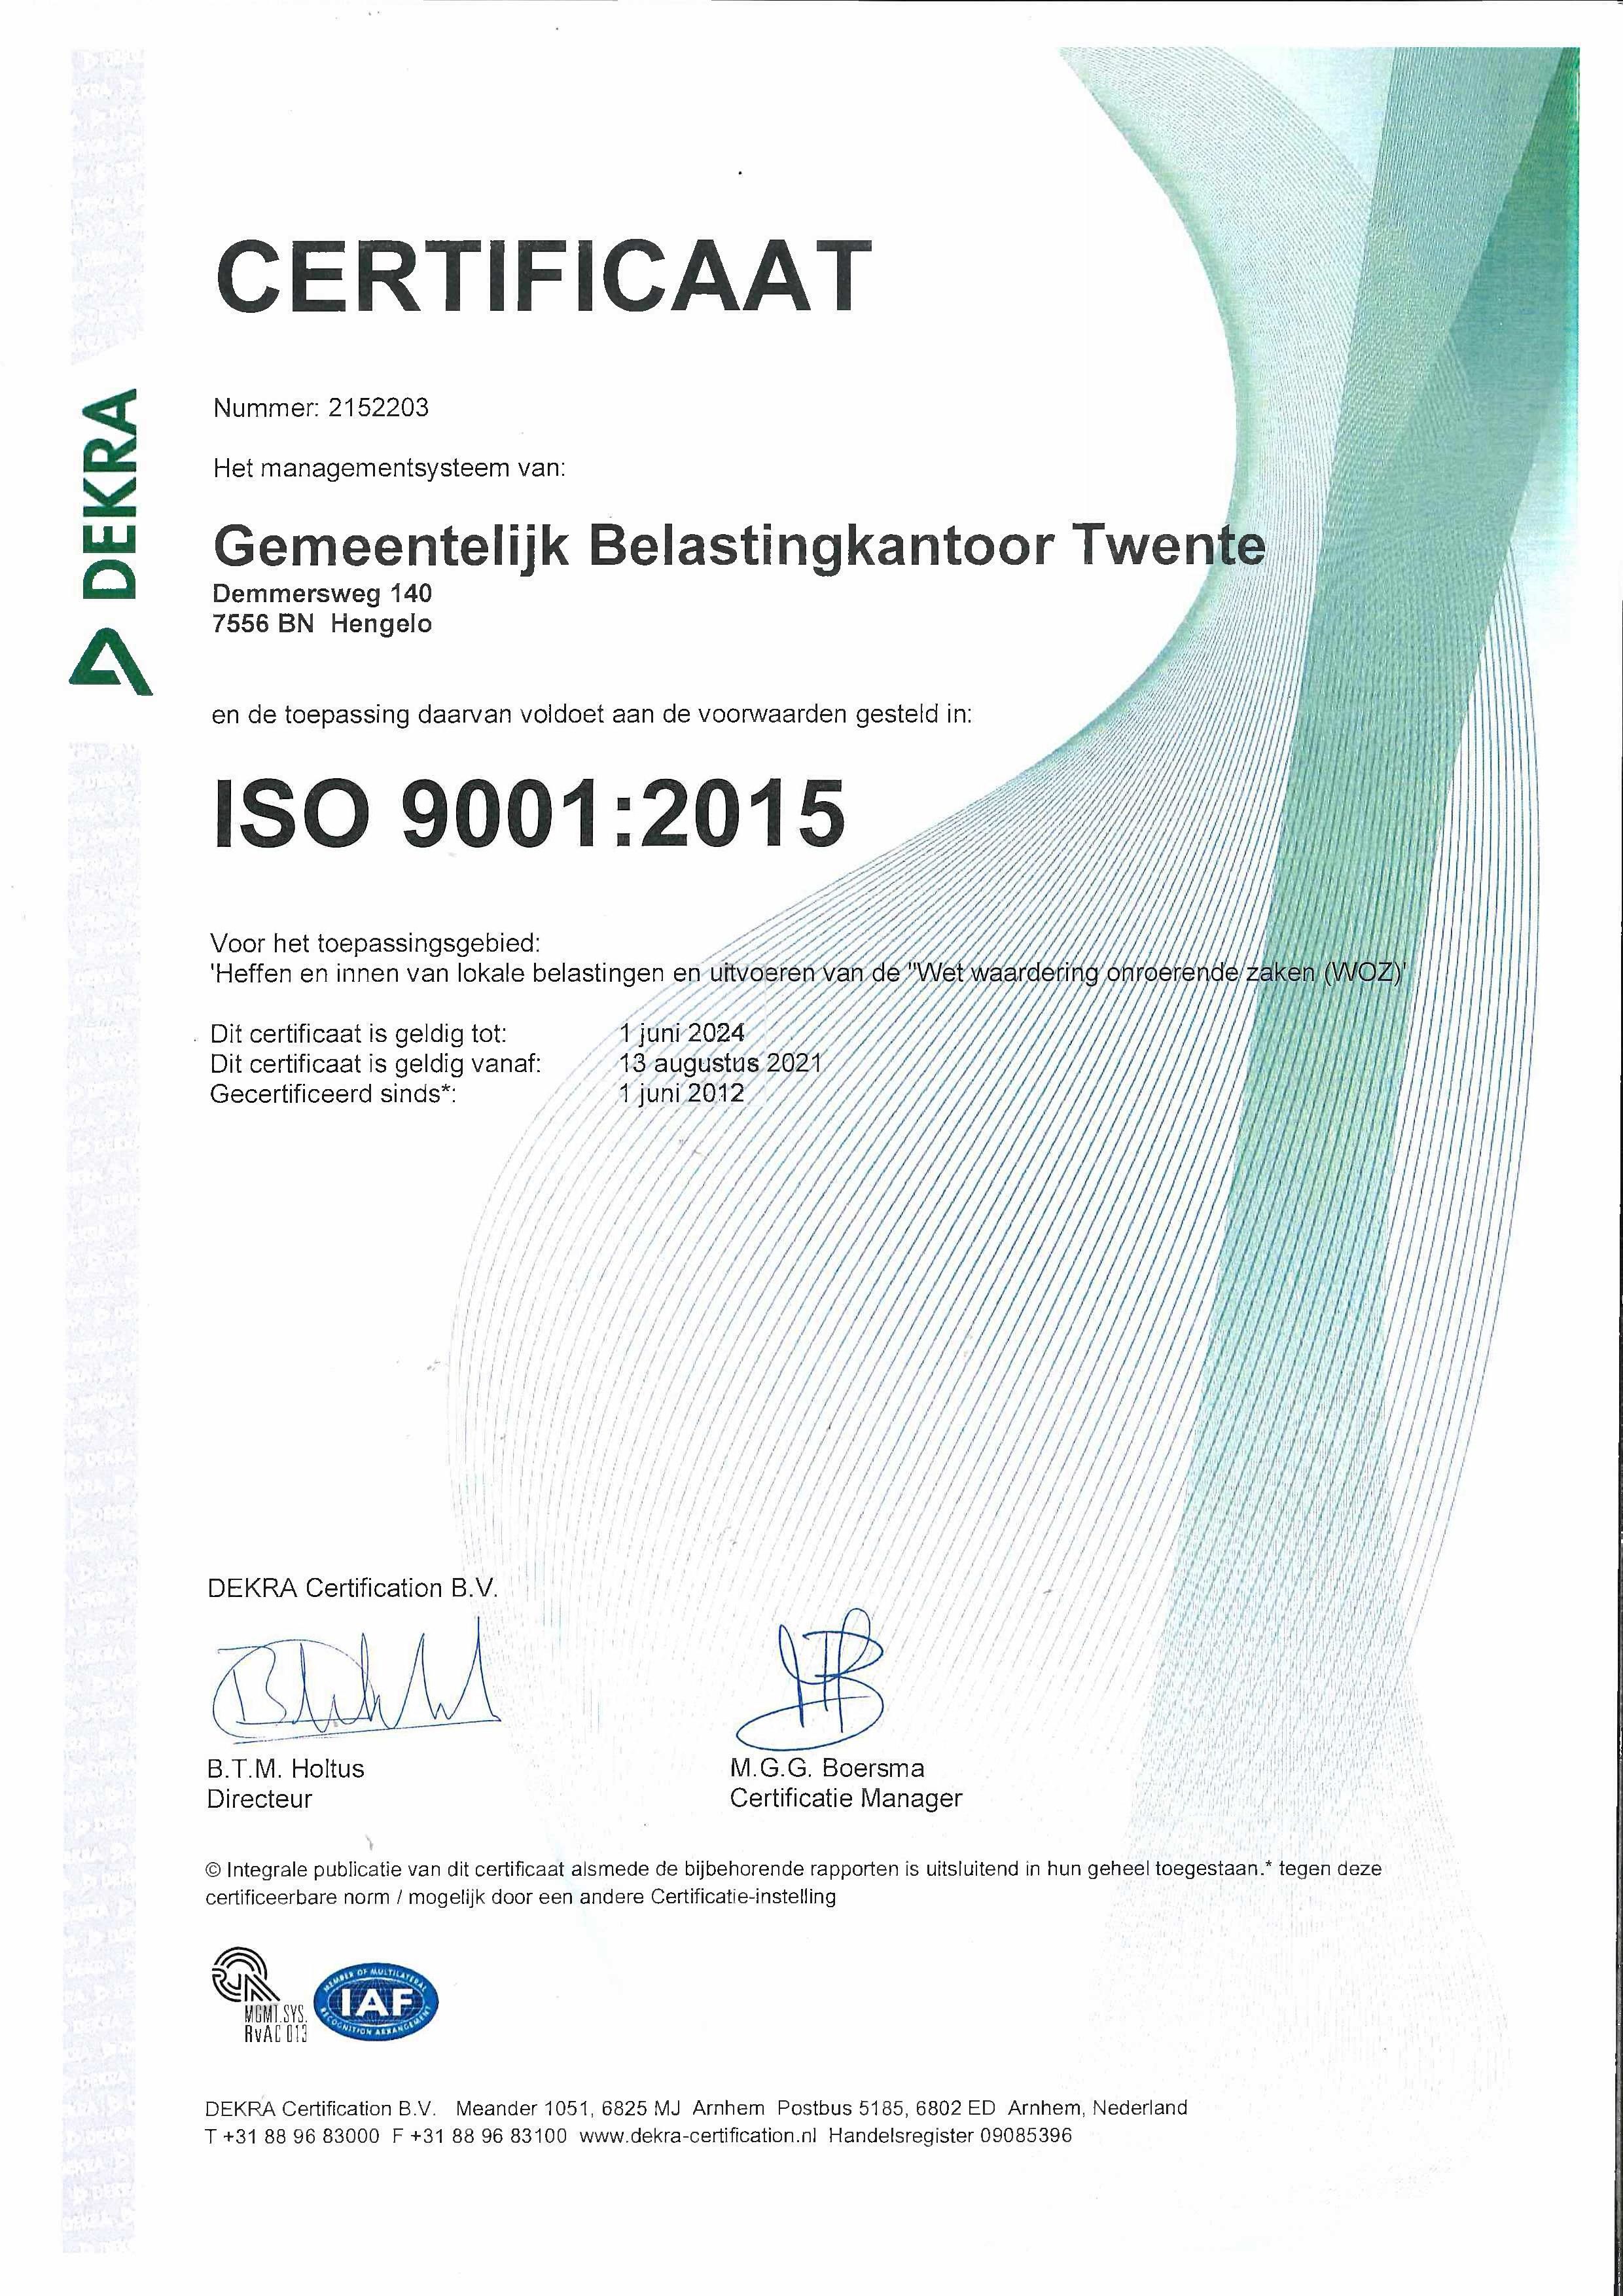 Afbeelding van het ISO certificaat van GBTwente